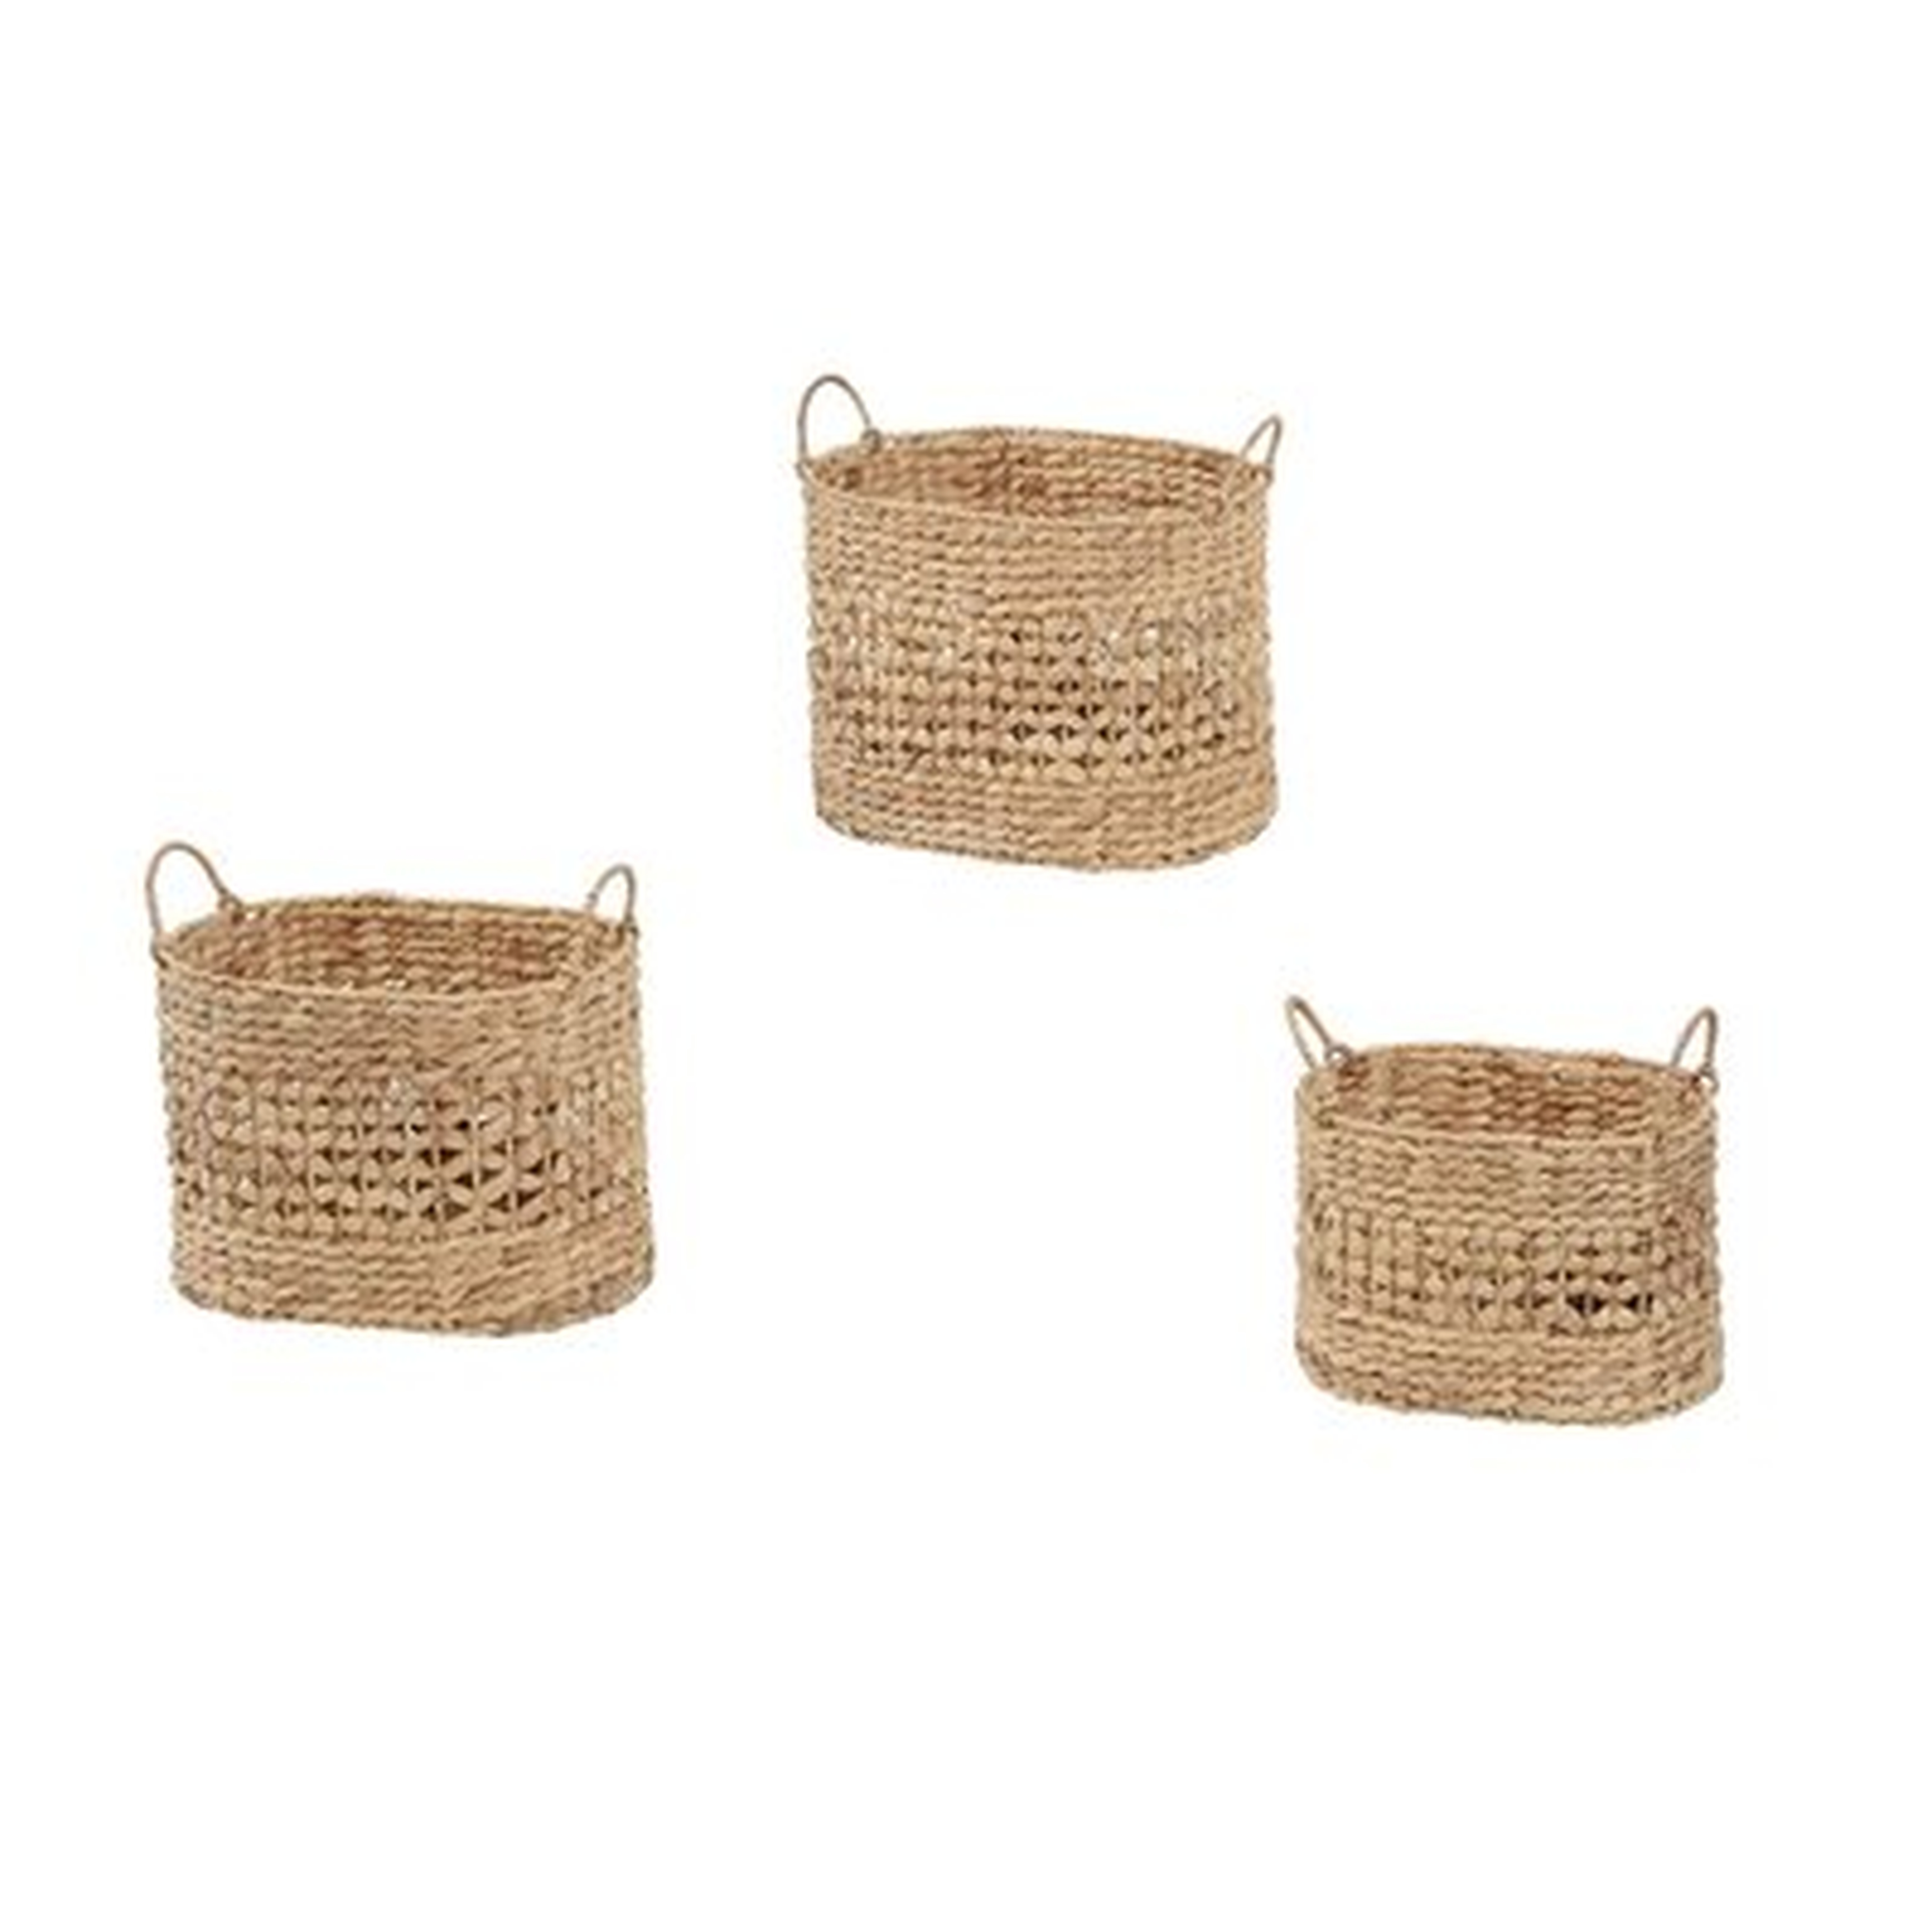 3 Piece Basket Set - Wayfair